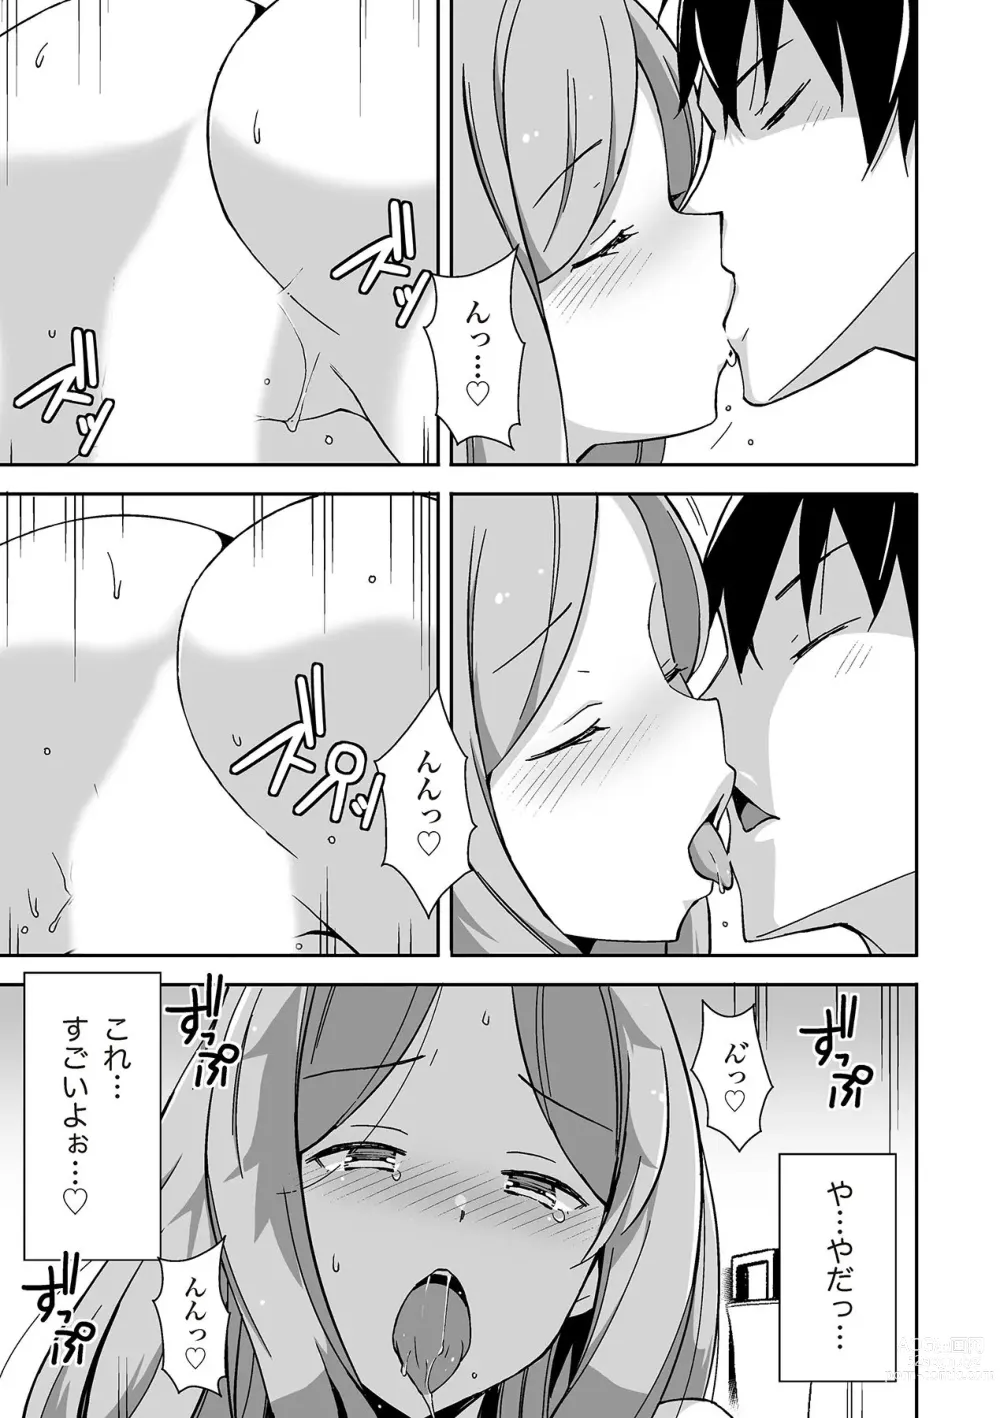 Page 125 of manga 唇と舌の性感開発・キス完全マニュアル イラスト版……とろキス